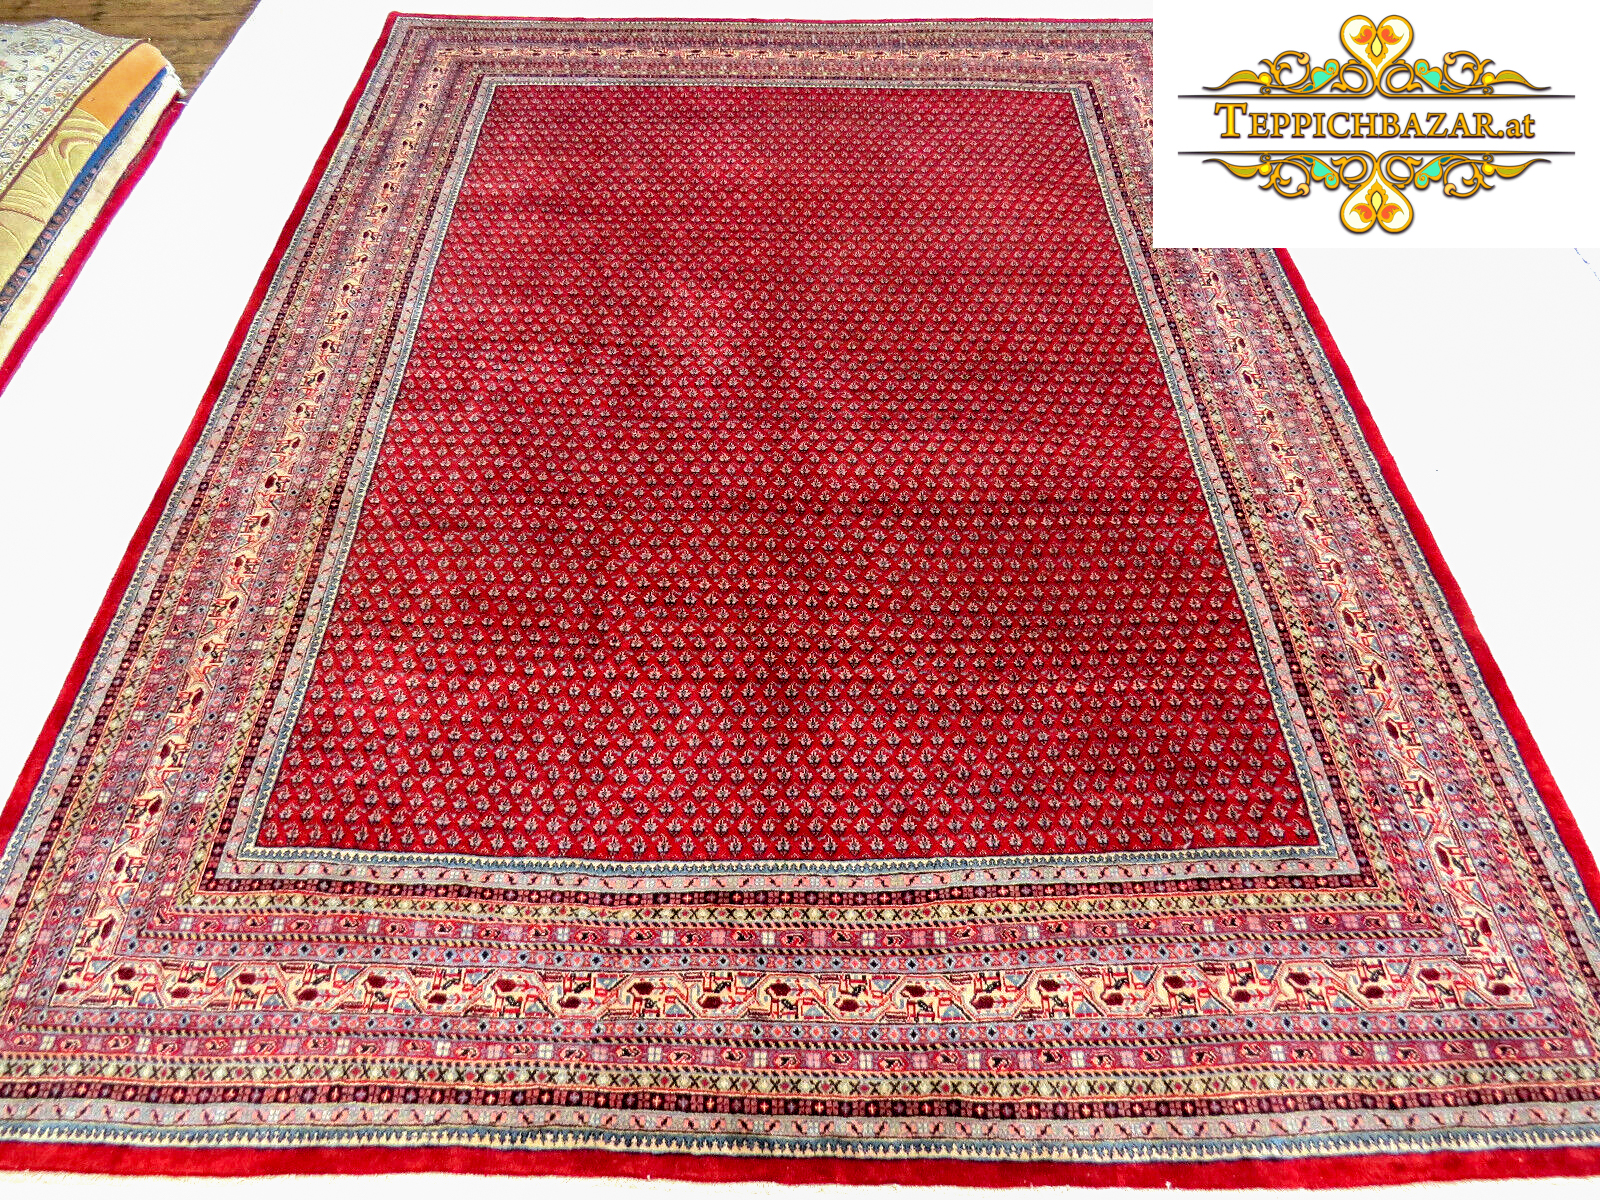 カーペット バザール - ペルシャ絨毯をオンラインで購入